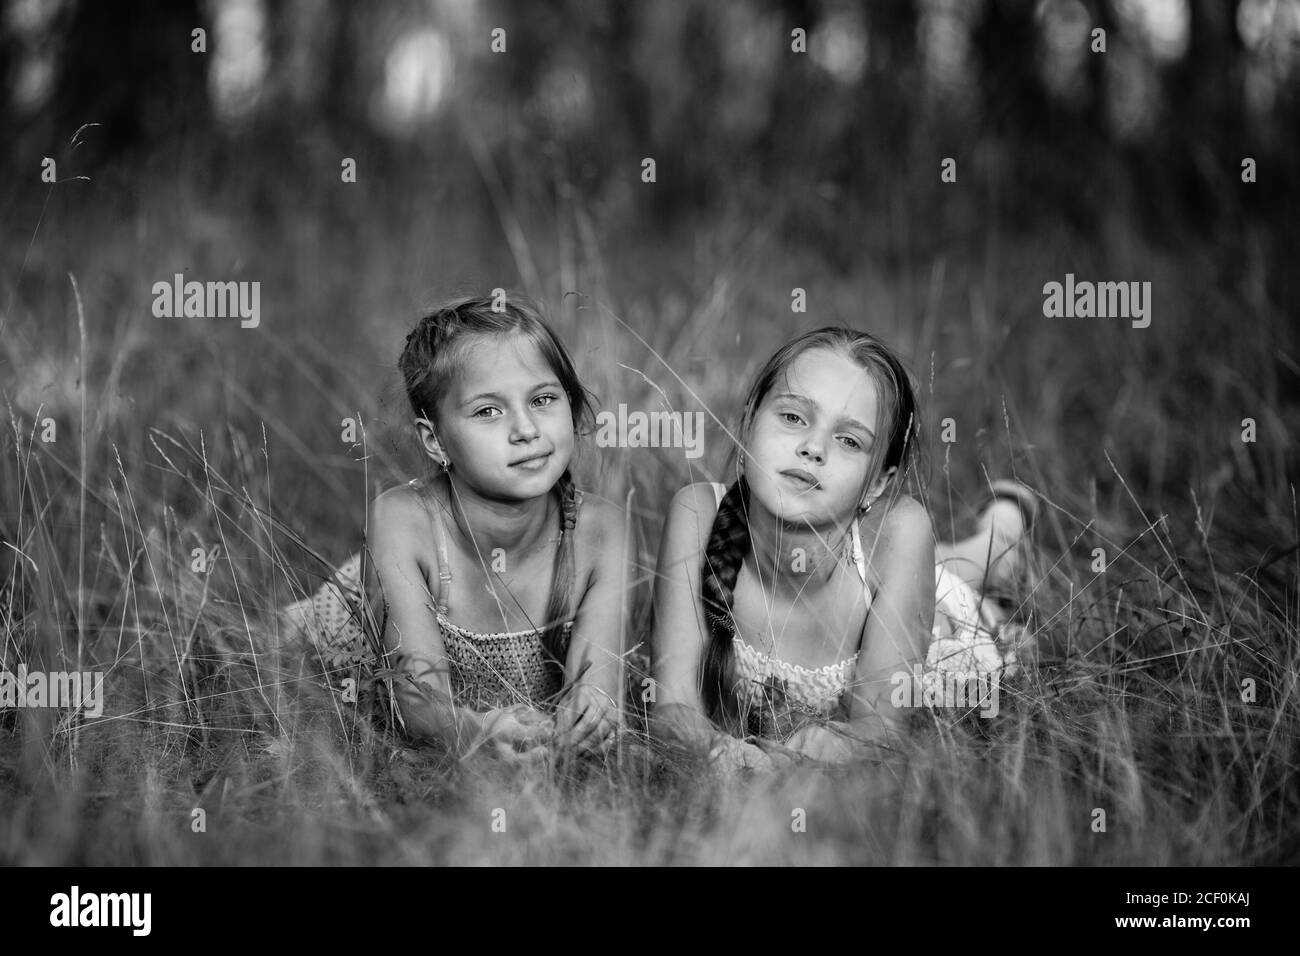 Deux filles de dix ans posent pour une photo dans le parc. Photographie en noir et blanc. Banque D'Images